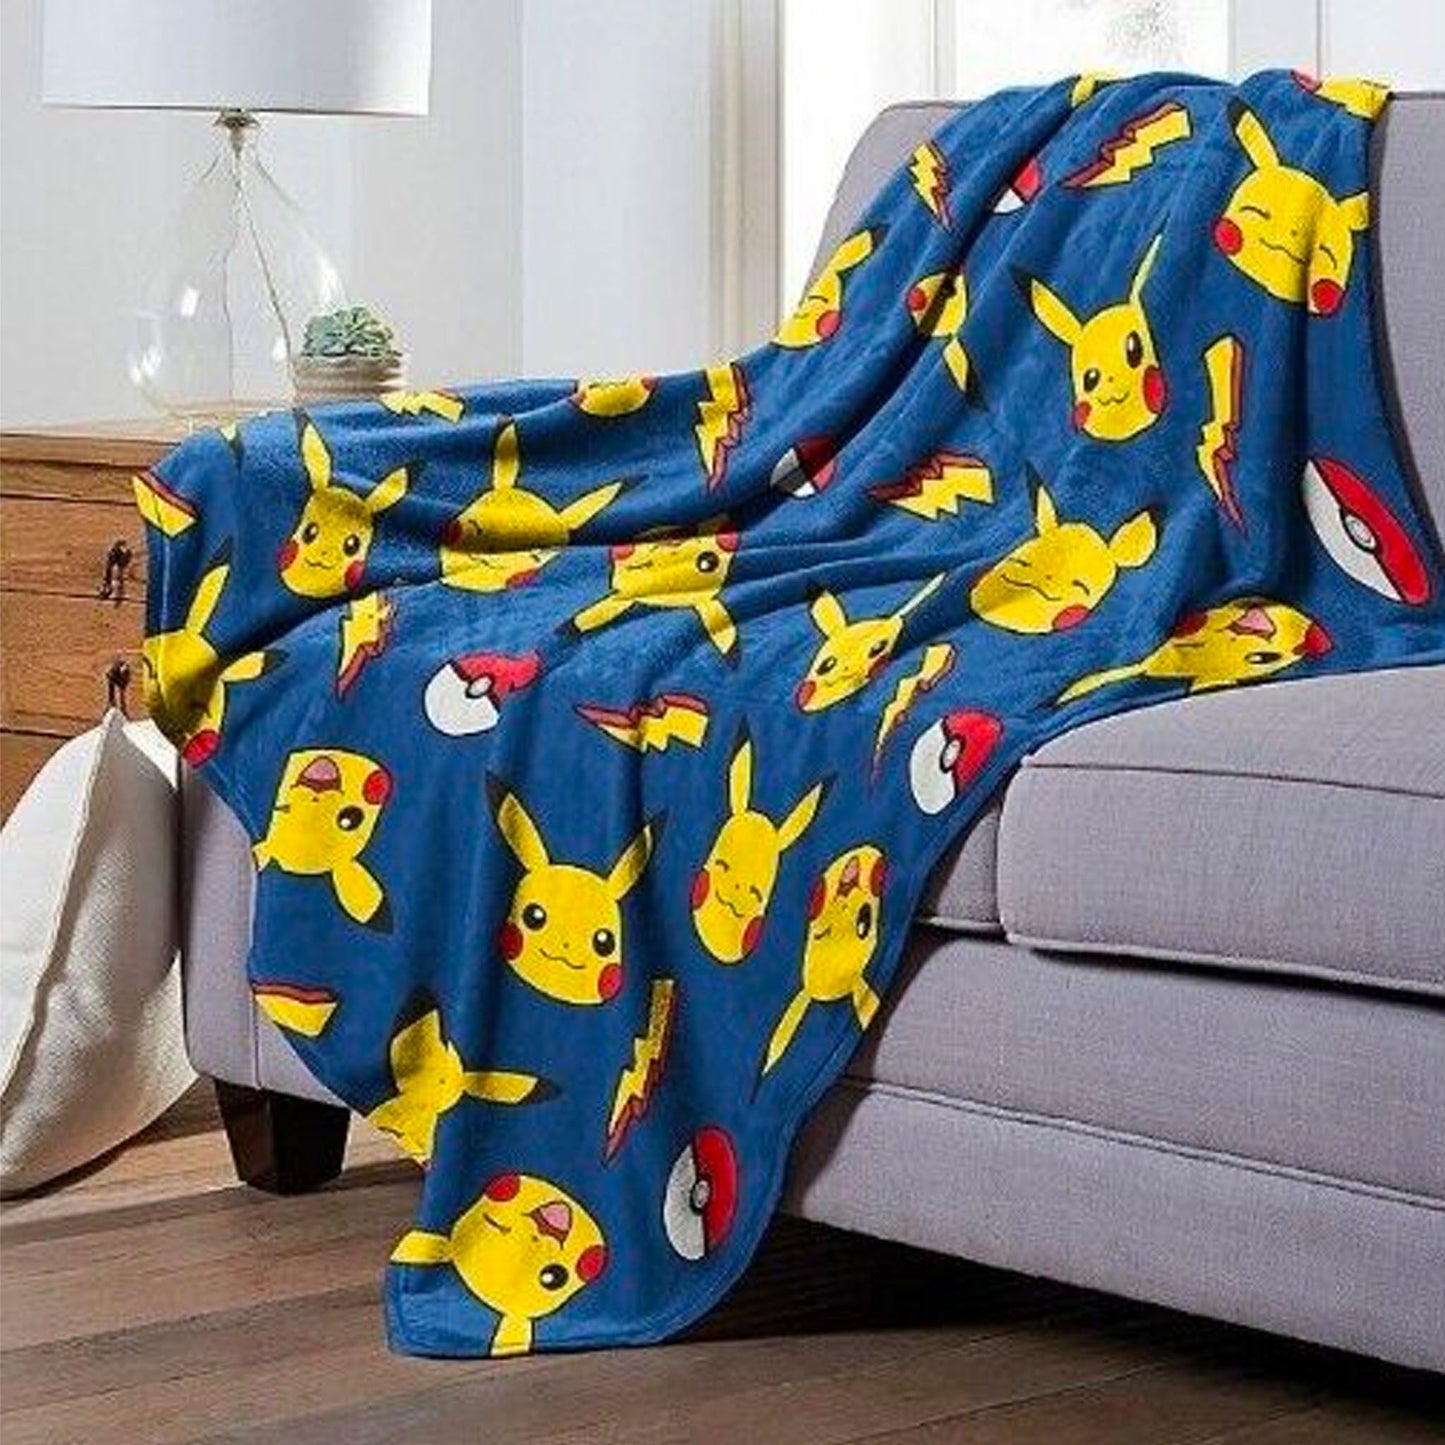 Pikachu (Pokemon) Plush and Throw Blanket